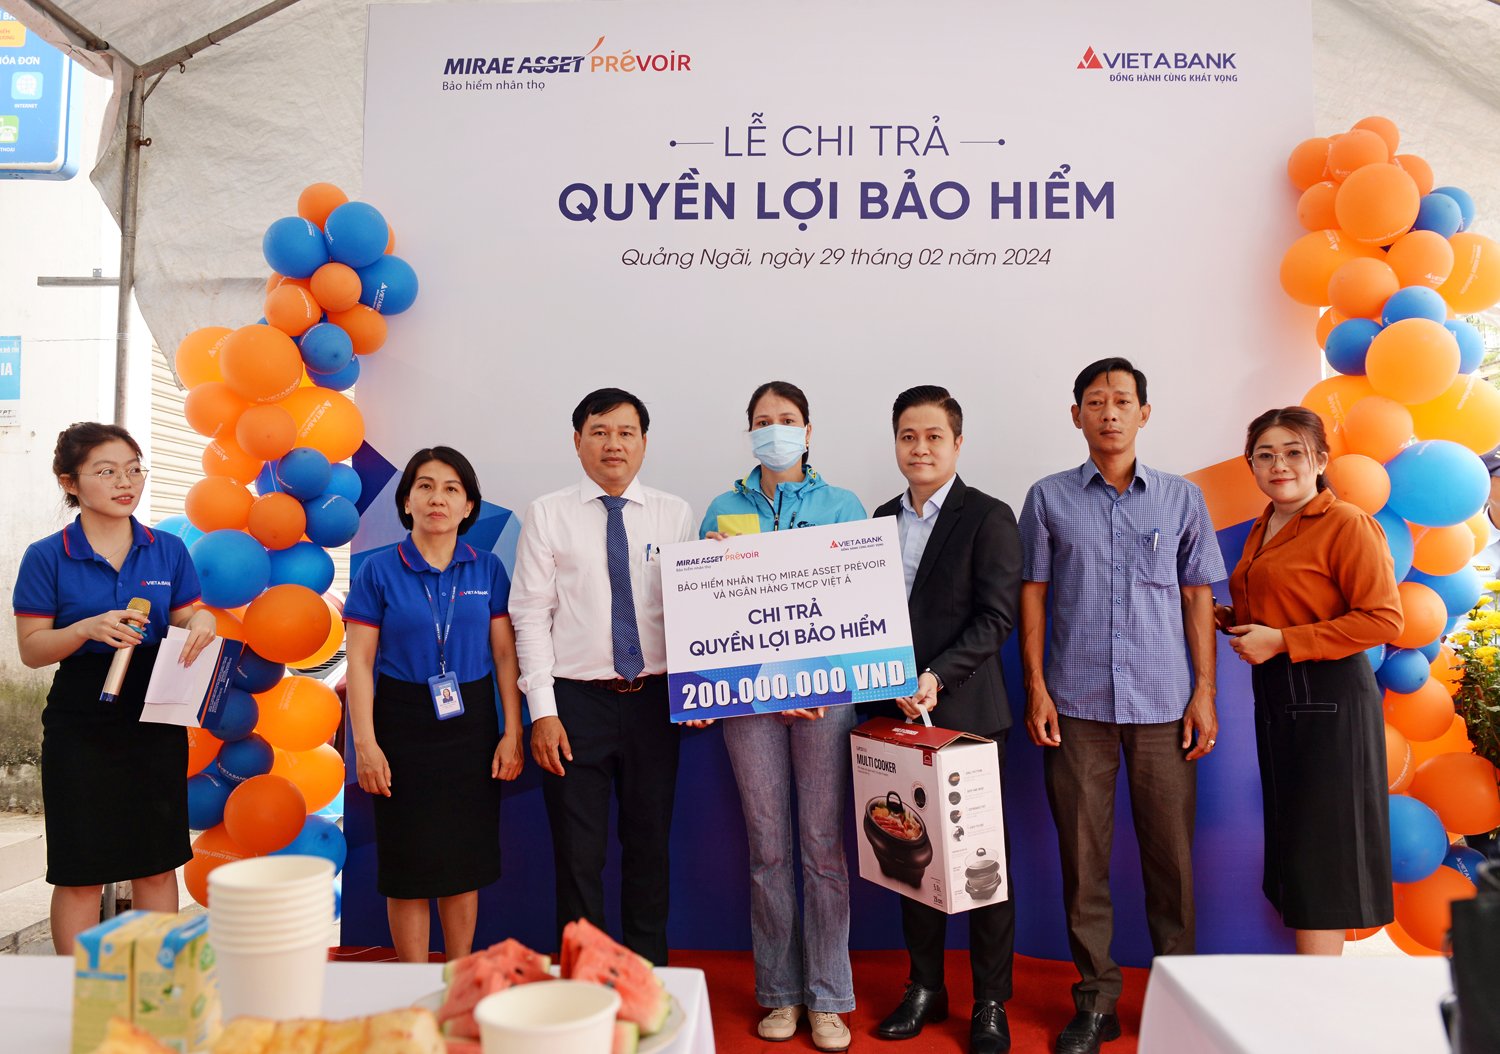 VietABank cùng Mirae Asset Prévoir chi trả 200 triệu đồng cho khách hàng tại Quảng Ngãi